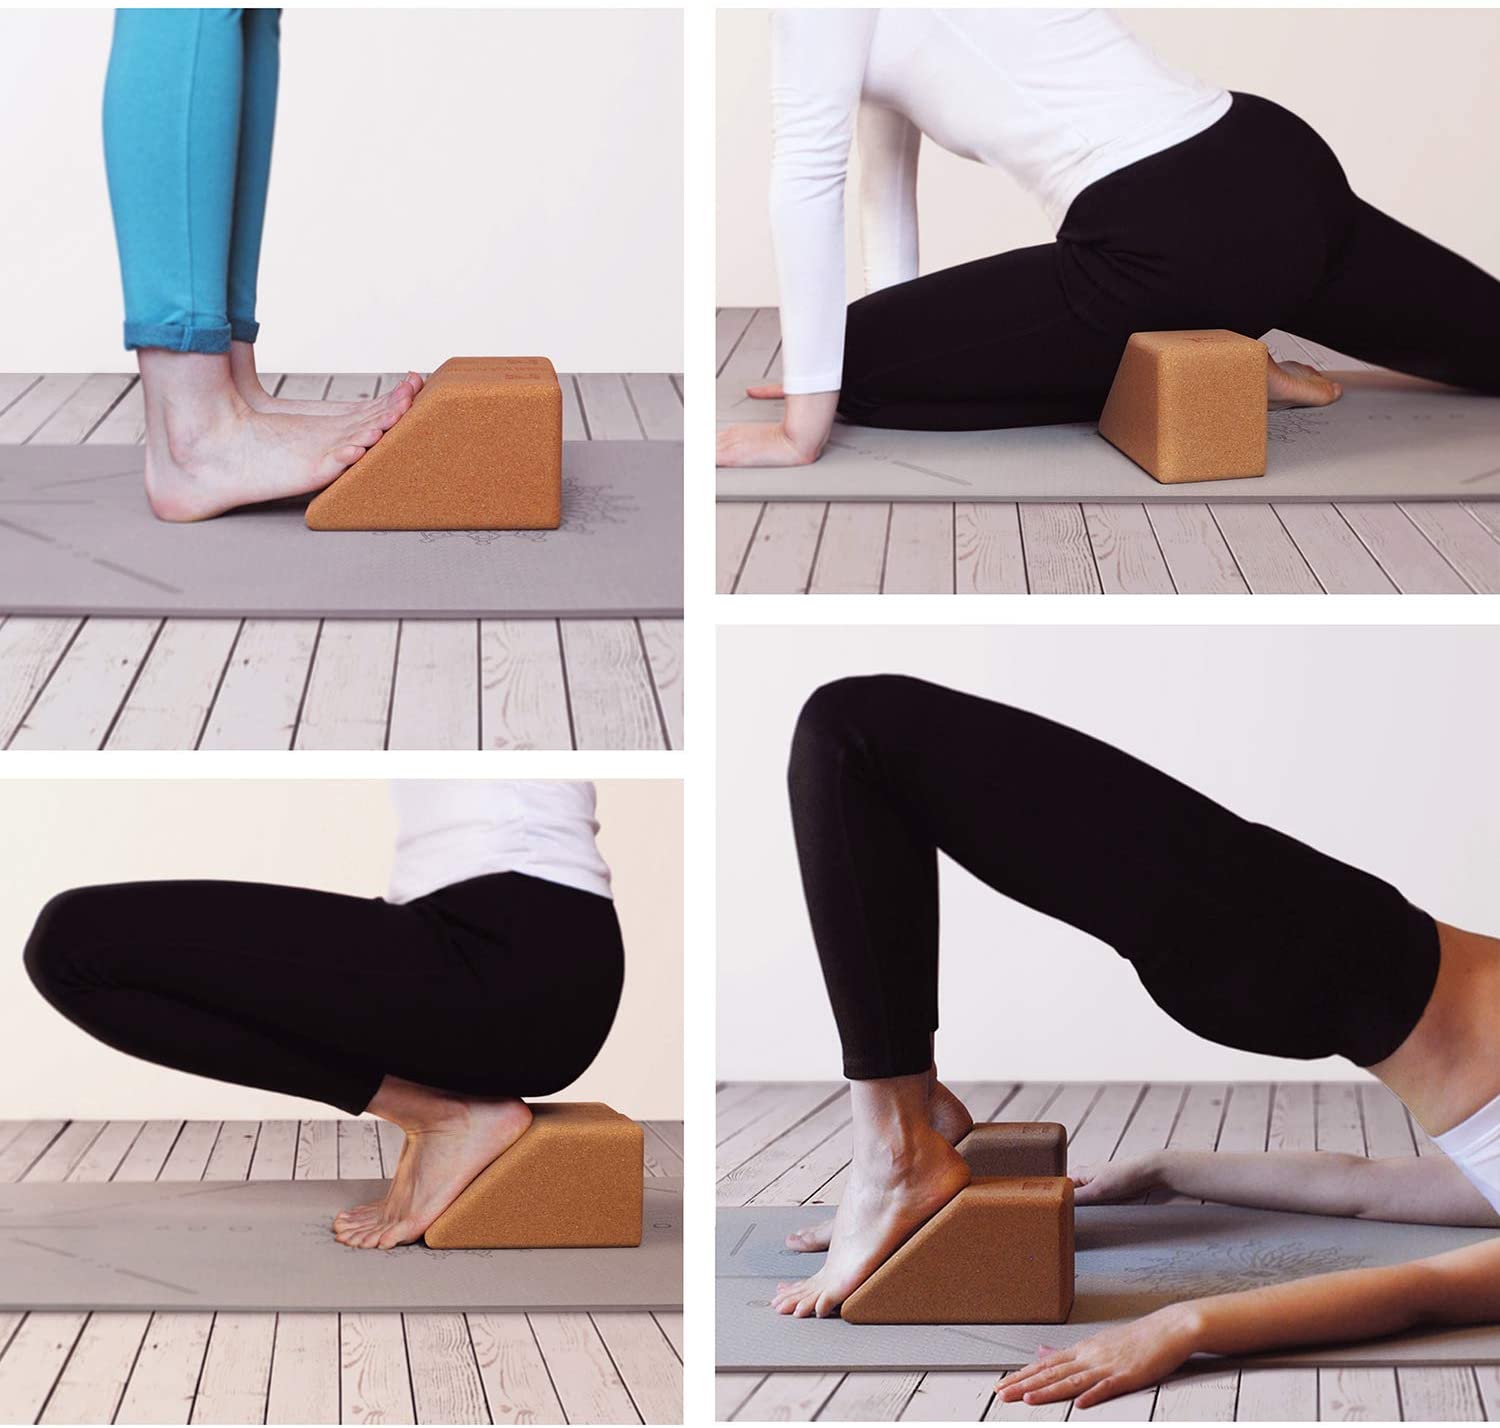 Trapezoid Cork Yoga Block Set of 2 – UPYOGA